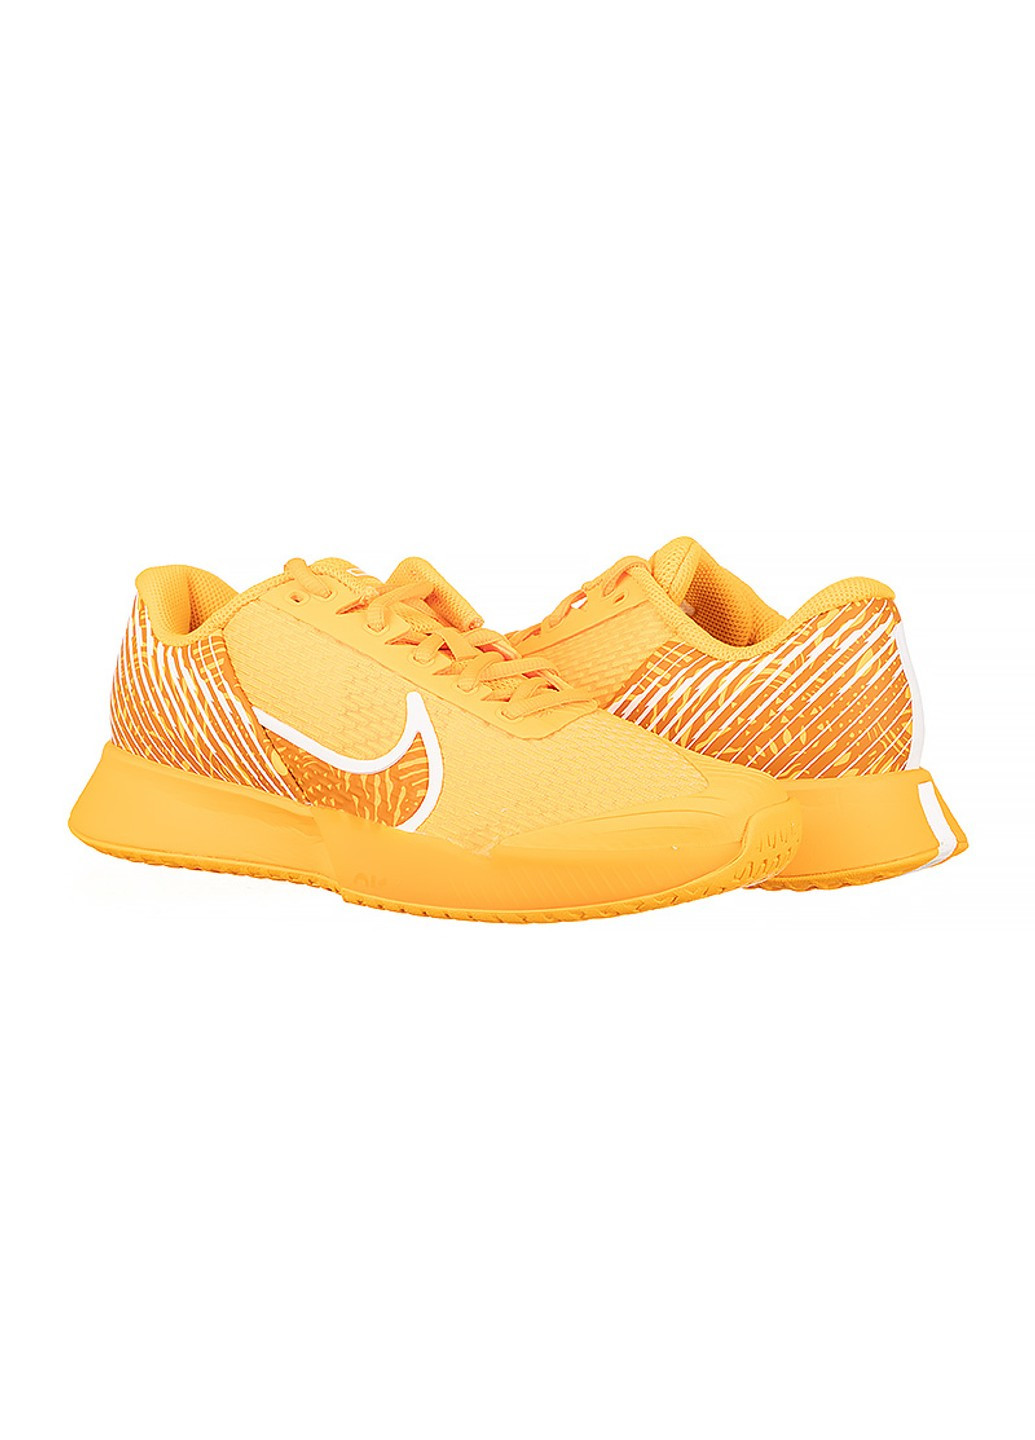 Оранжевые всесезонные кроссовки zoom vapor pro 2 hc Nike